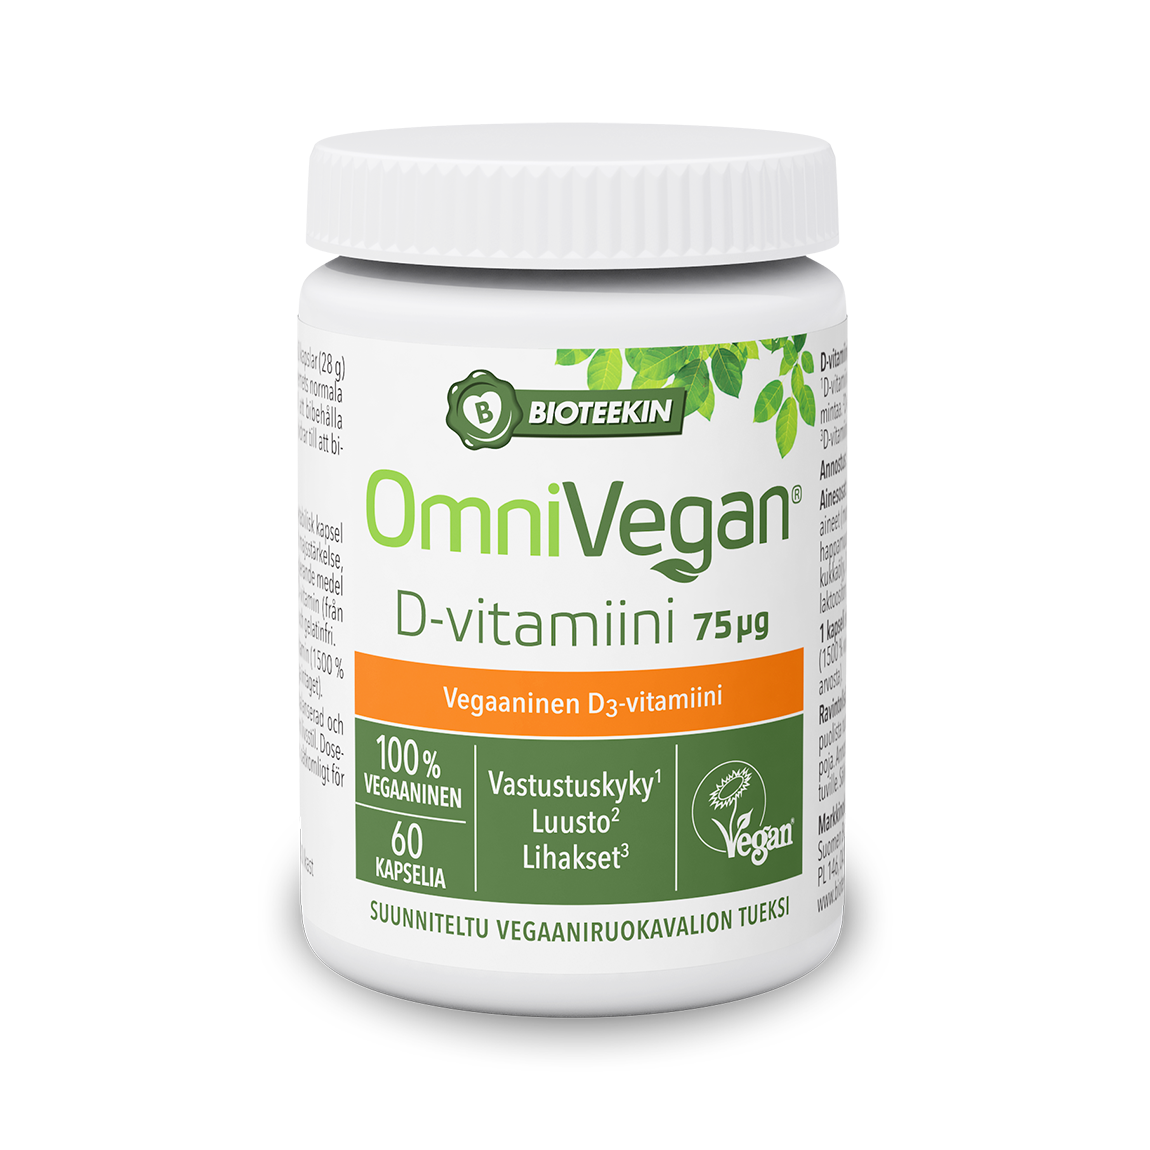 Bioteekin OmniVegan D-Vitamiini 75 µg 60 kaps. - Päiväys 06/2024